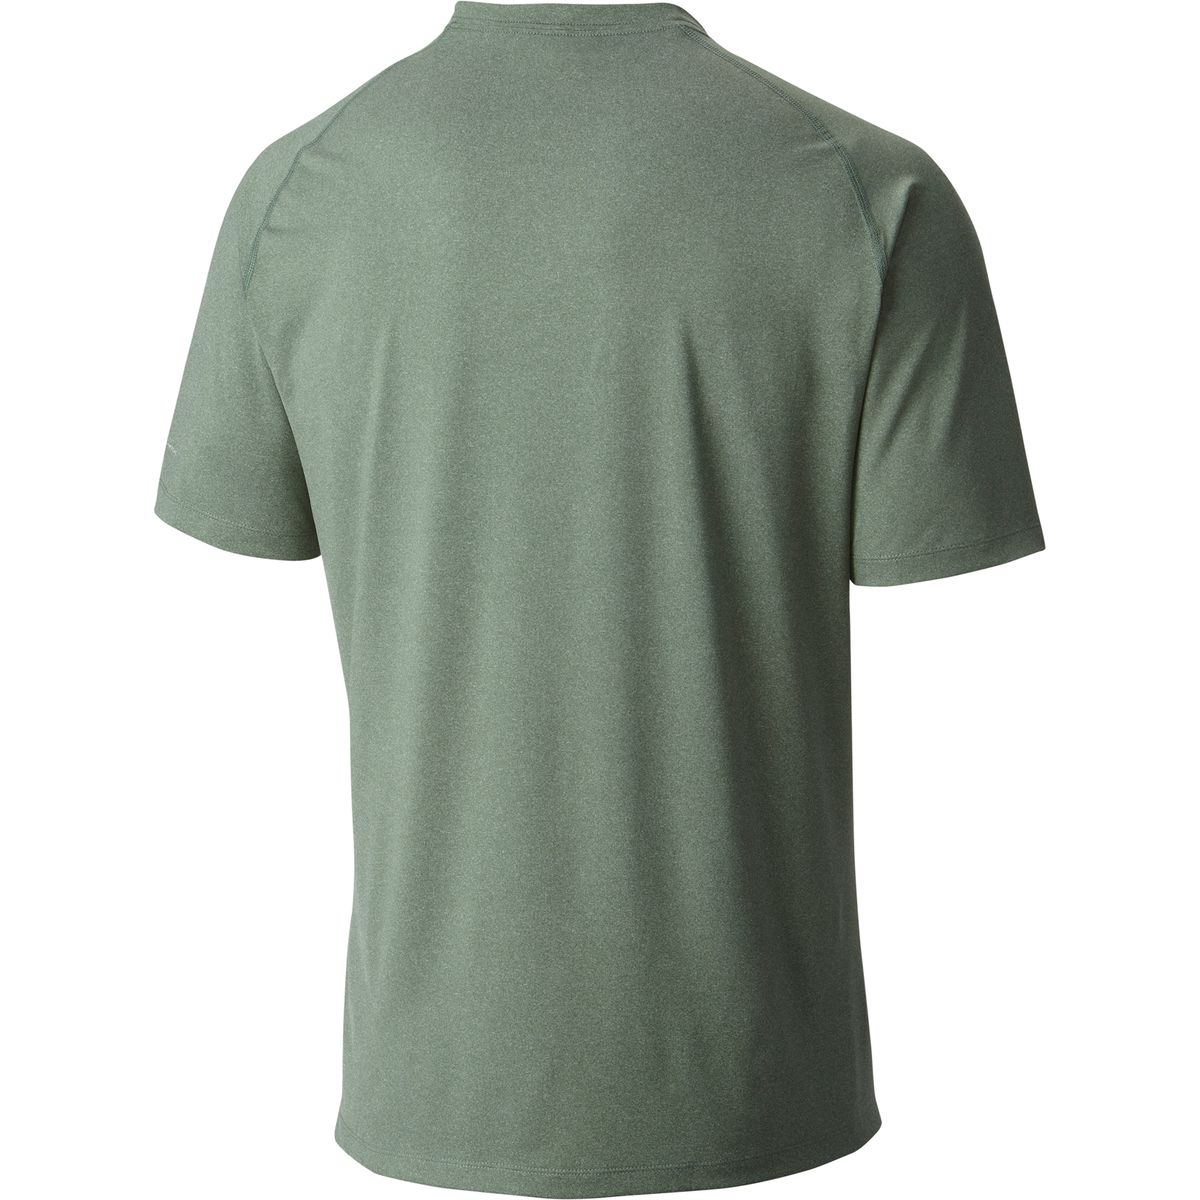 Columbia Tuk Mountain Shirt - Men's | Backcountry.com